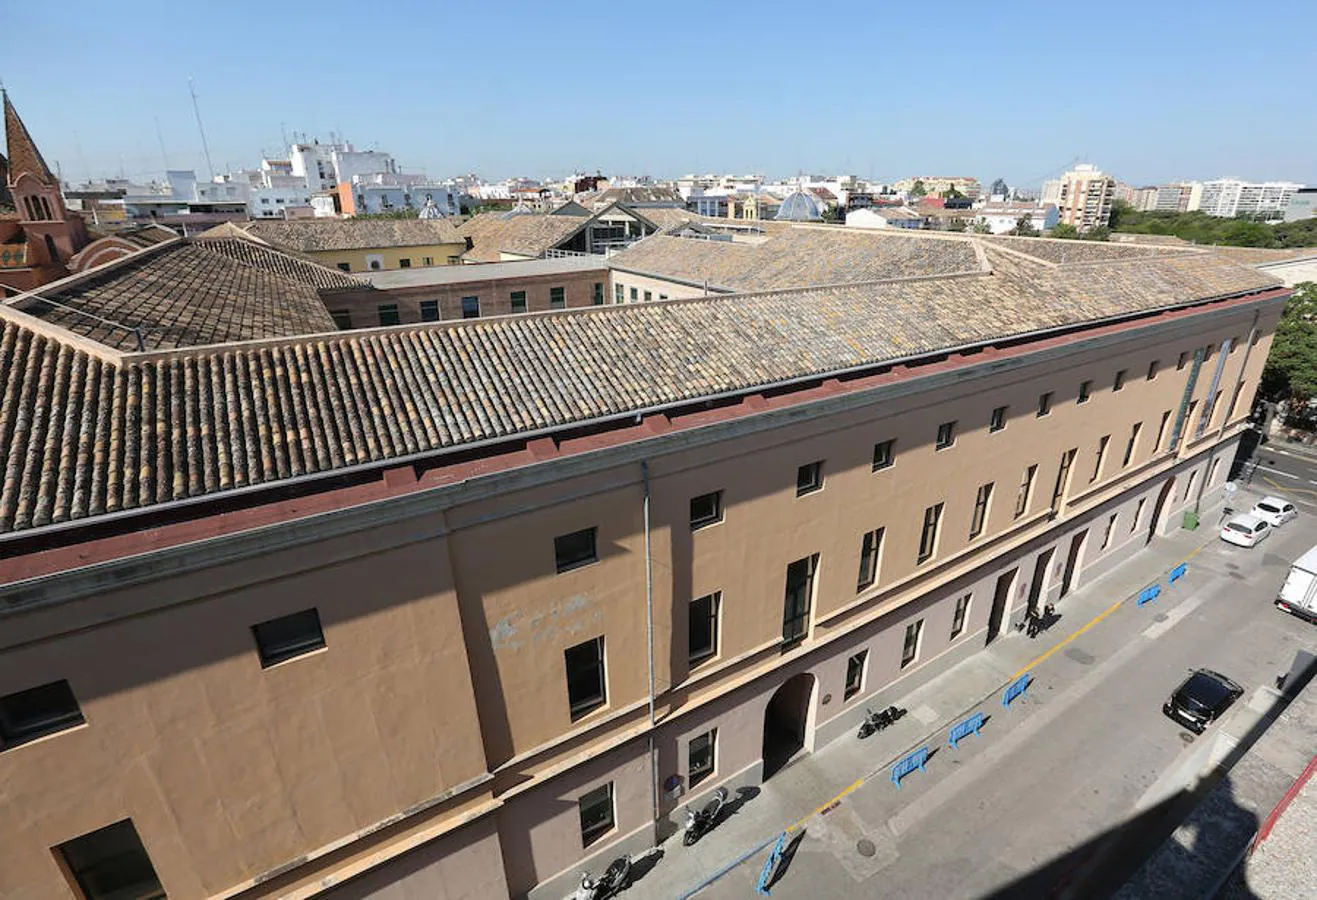 A propósito del Día Internacional de los Museos, nos colamos en uno de los espacios menos conocidos del IVAM, su tejado. Desde allí observamos Valencia como pocas veces la habíamos visto.